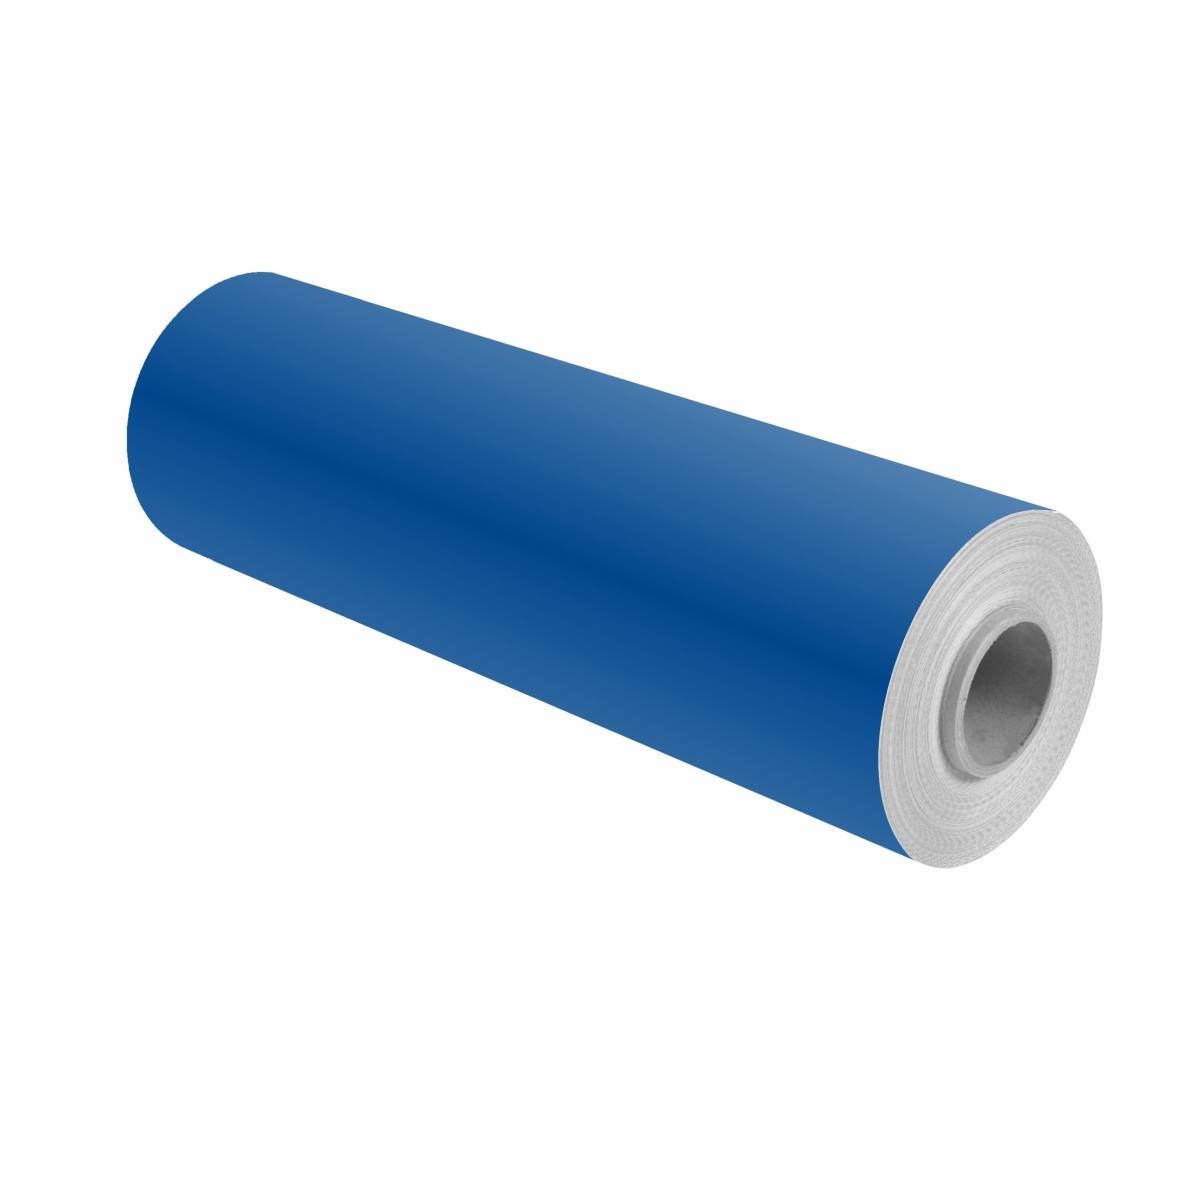 3M Scotchcal pellicola colorata 100-17 blu genziana 1,22m x 25m